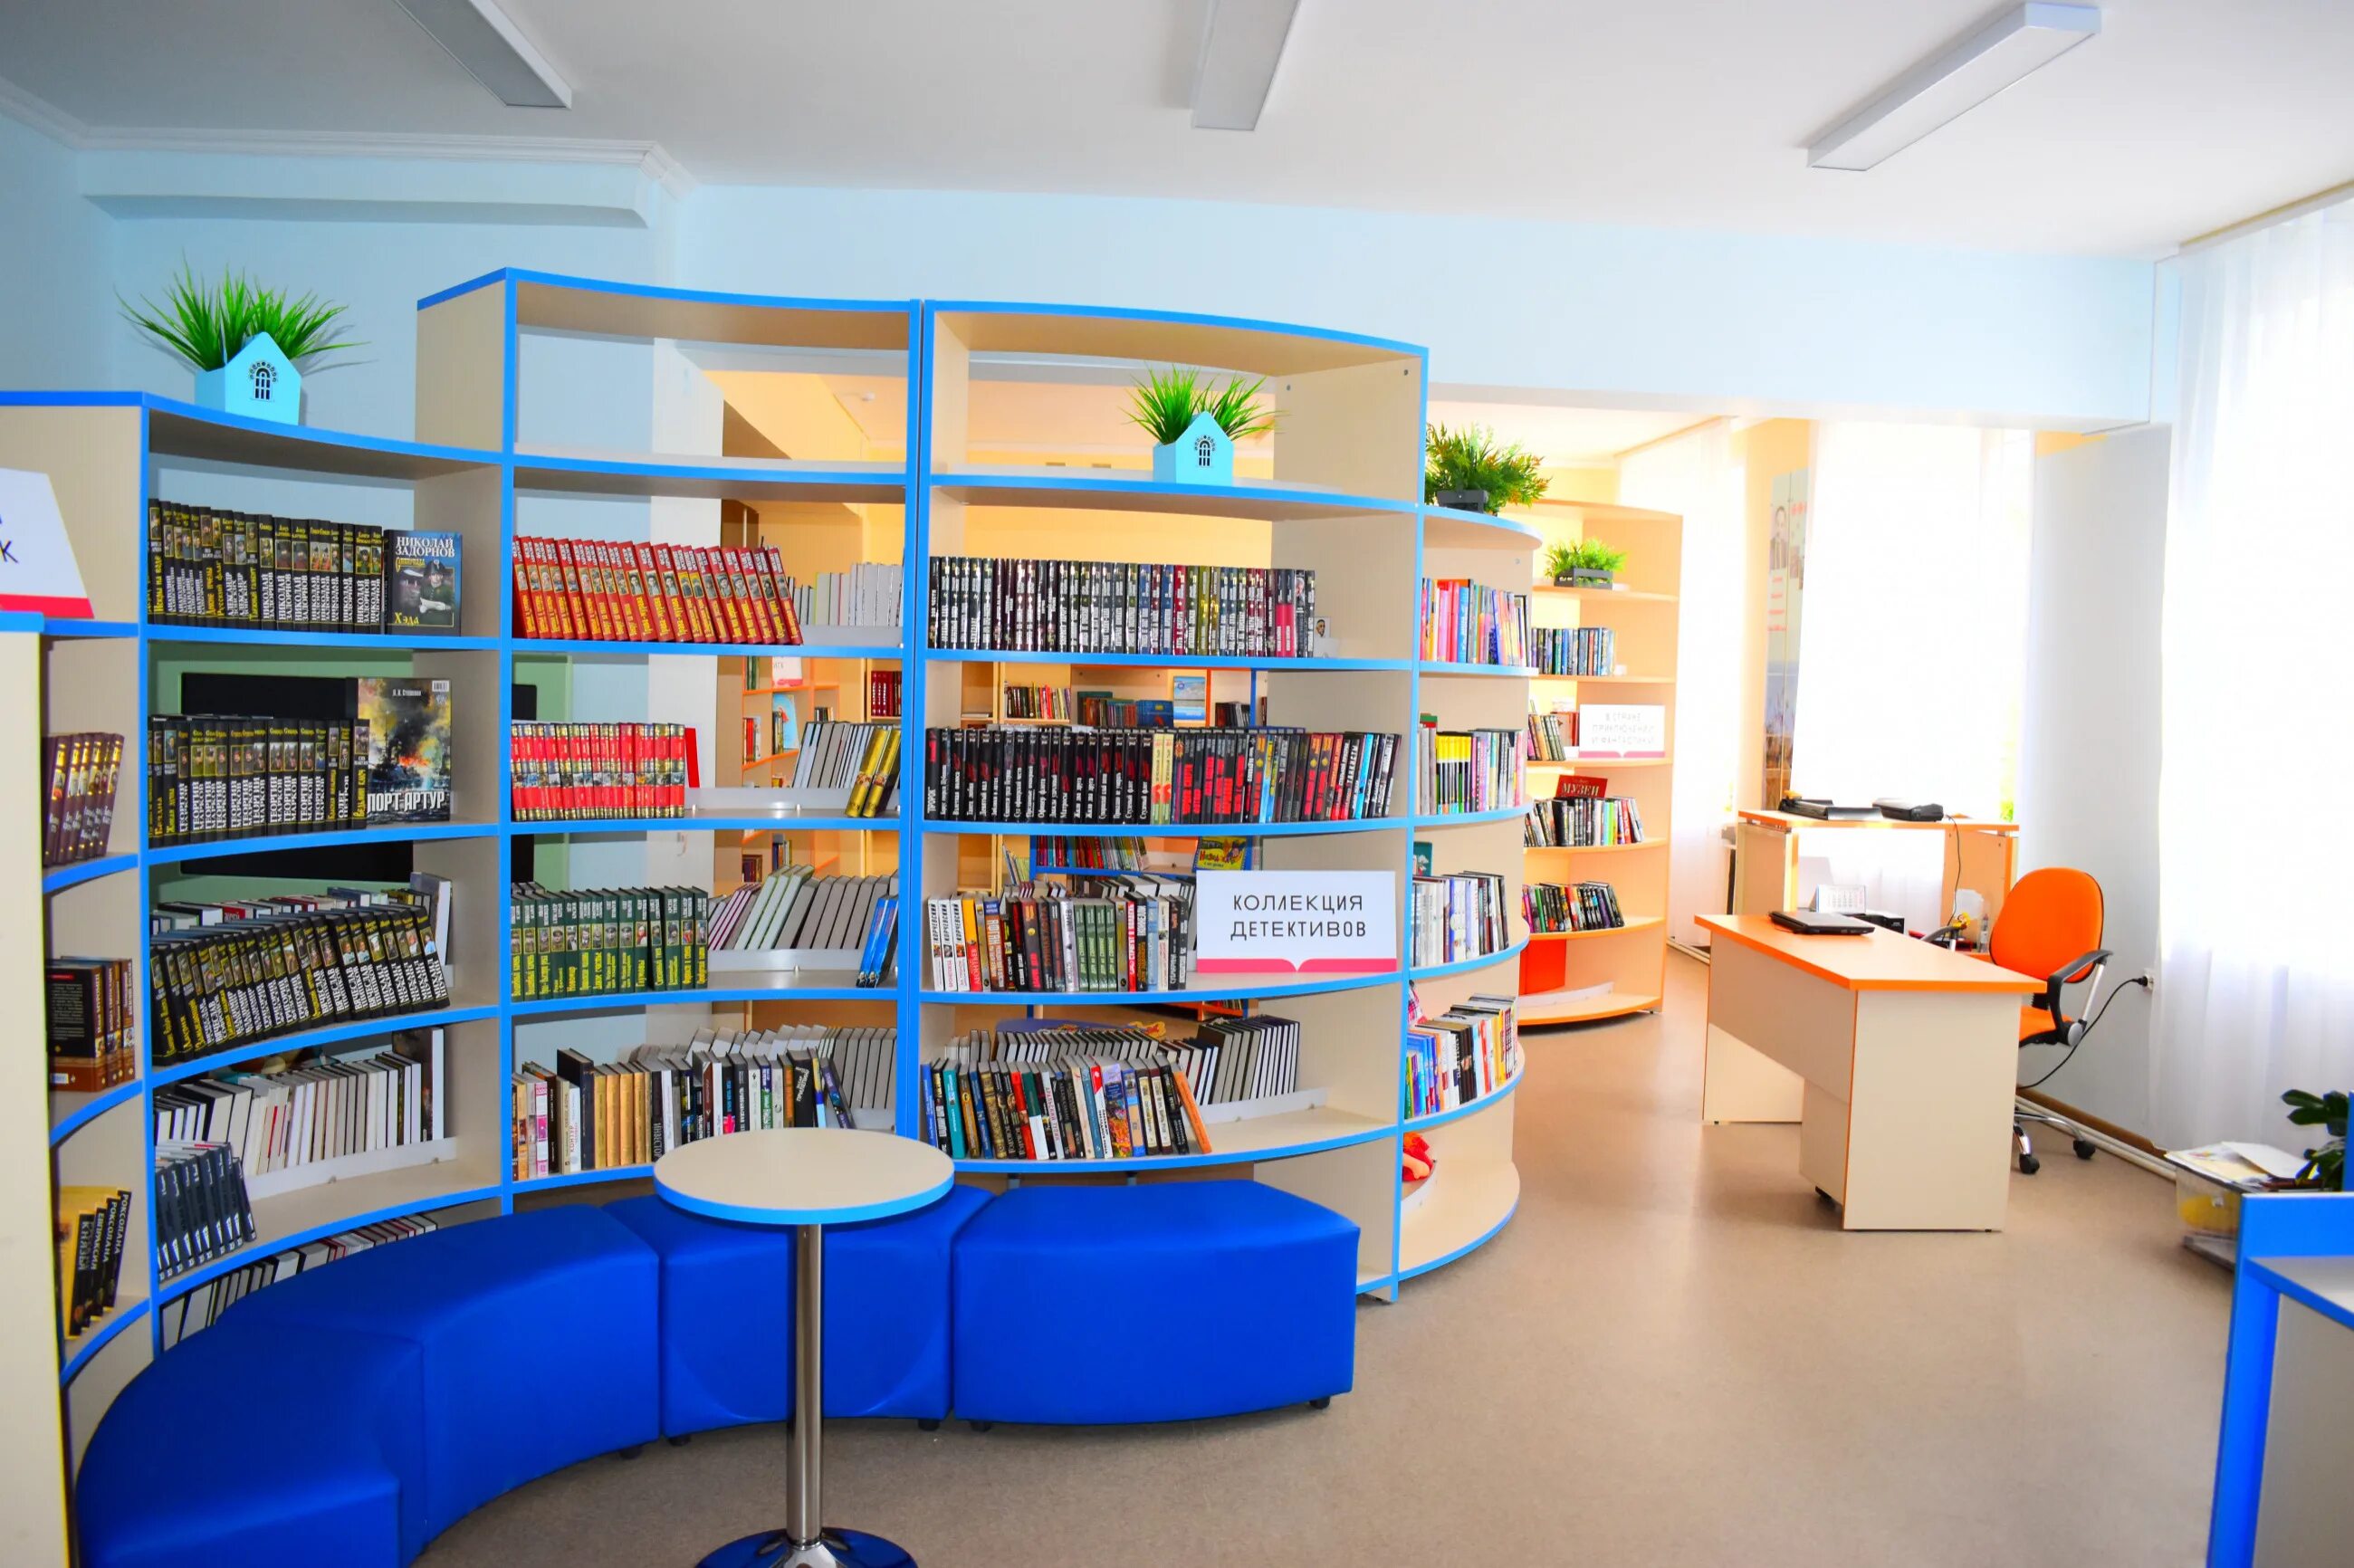 Модельная библиотека. Новая библиотека. Библиотека нового поколения. Современная модельная библиотека. Библиотека детская приморский